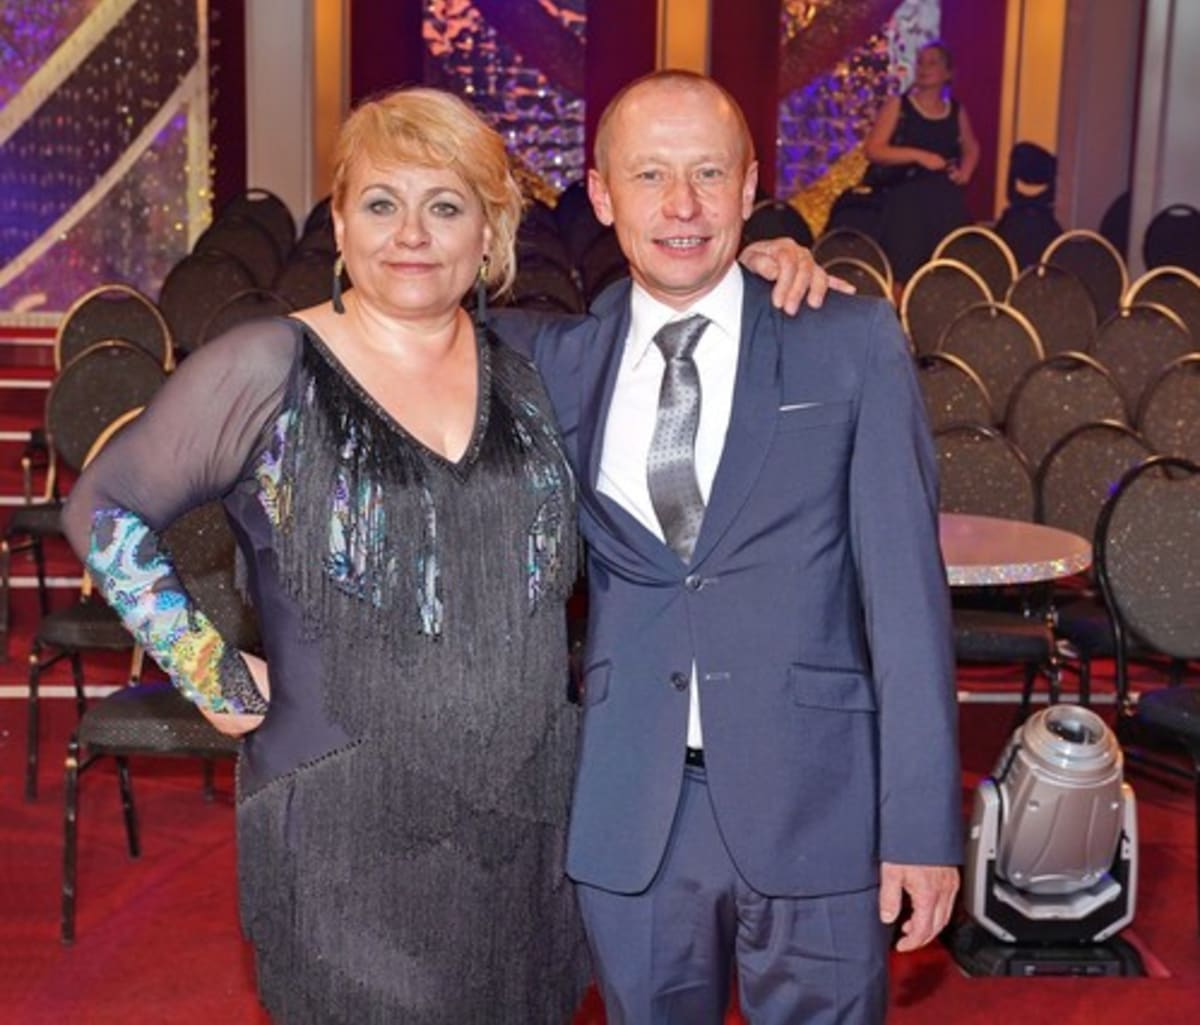 Pavla Tomicová s manželem Ondřejem Malým